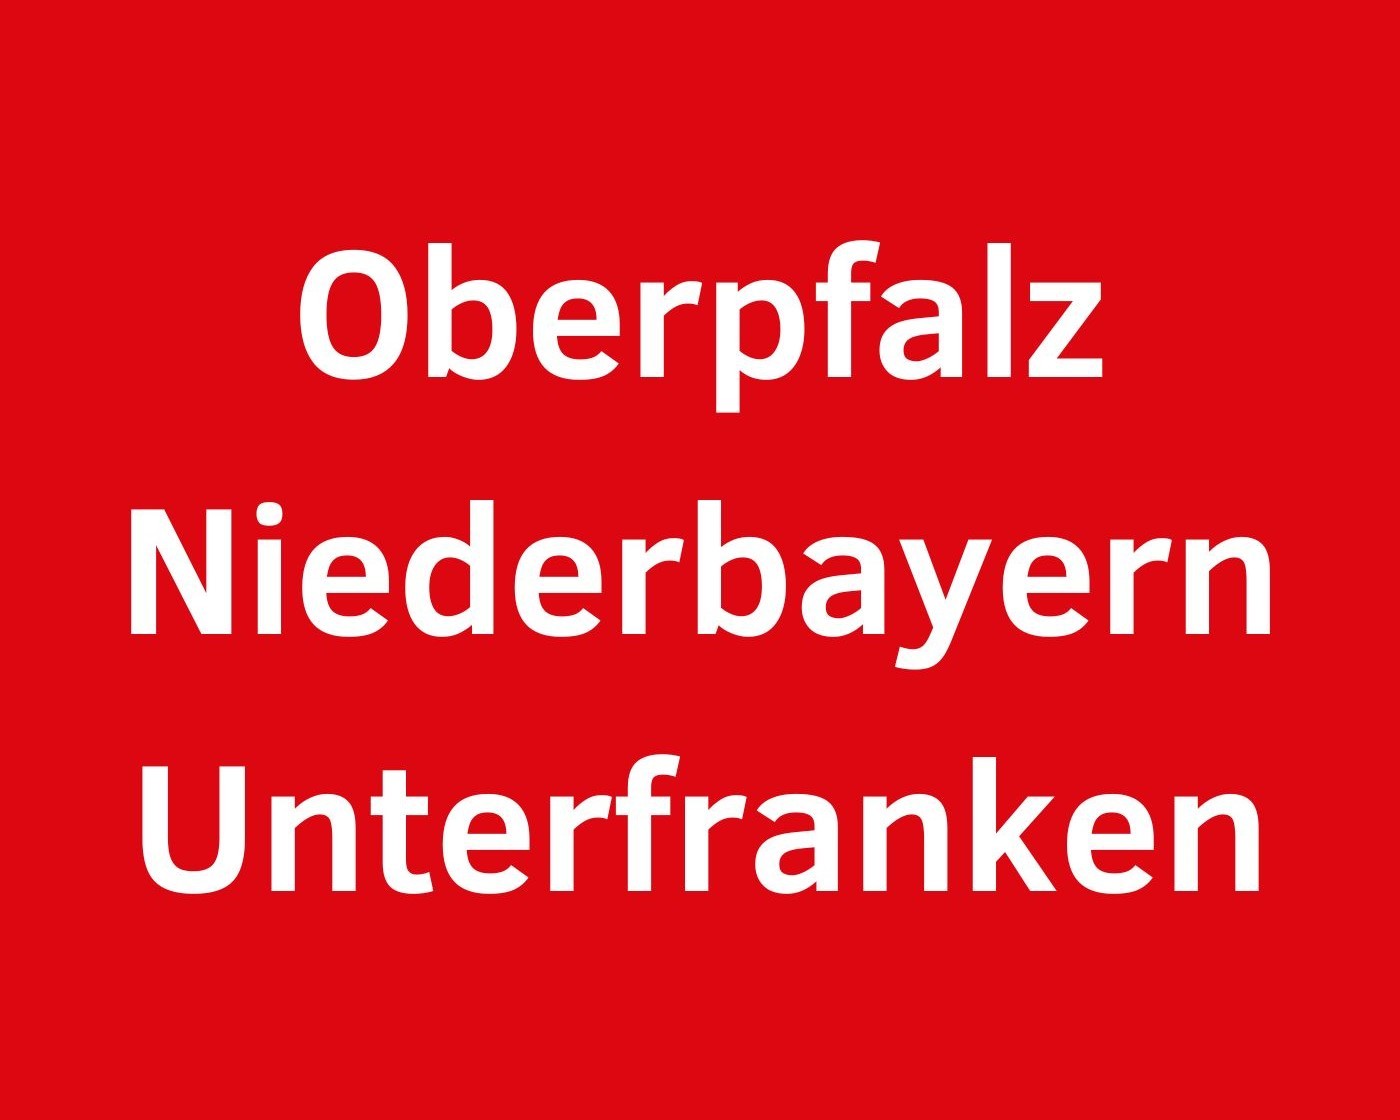 Oberpfalz_Niederbayern_Unterfranken1